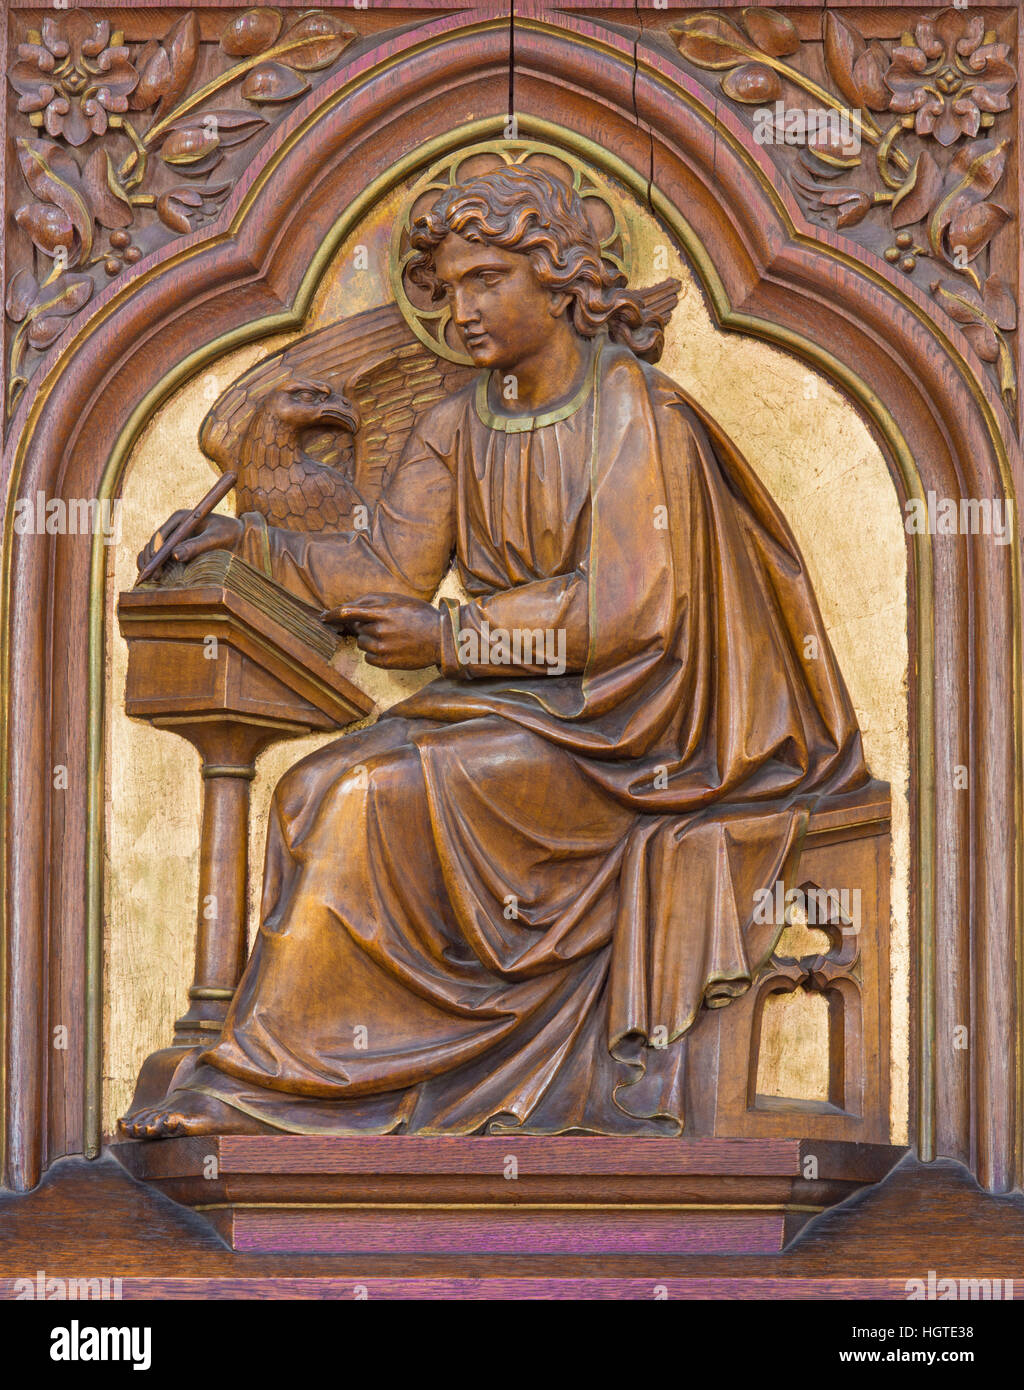 Vienne, Autriche - 19 décembre 2016 : Le relief sculpté de saint Jean l'Évangéliste à l'église Brigitta Kirche par artiste inconnu de 19 ans. 100. Banque D'Images